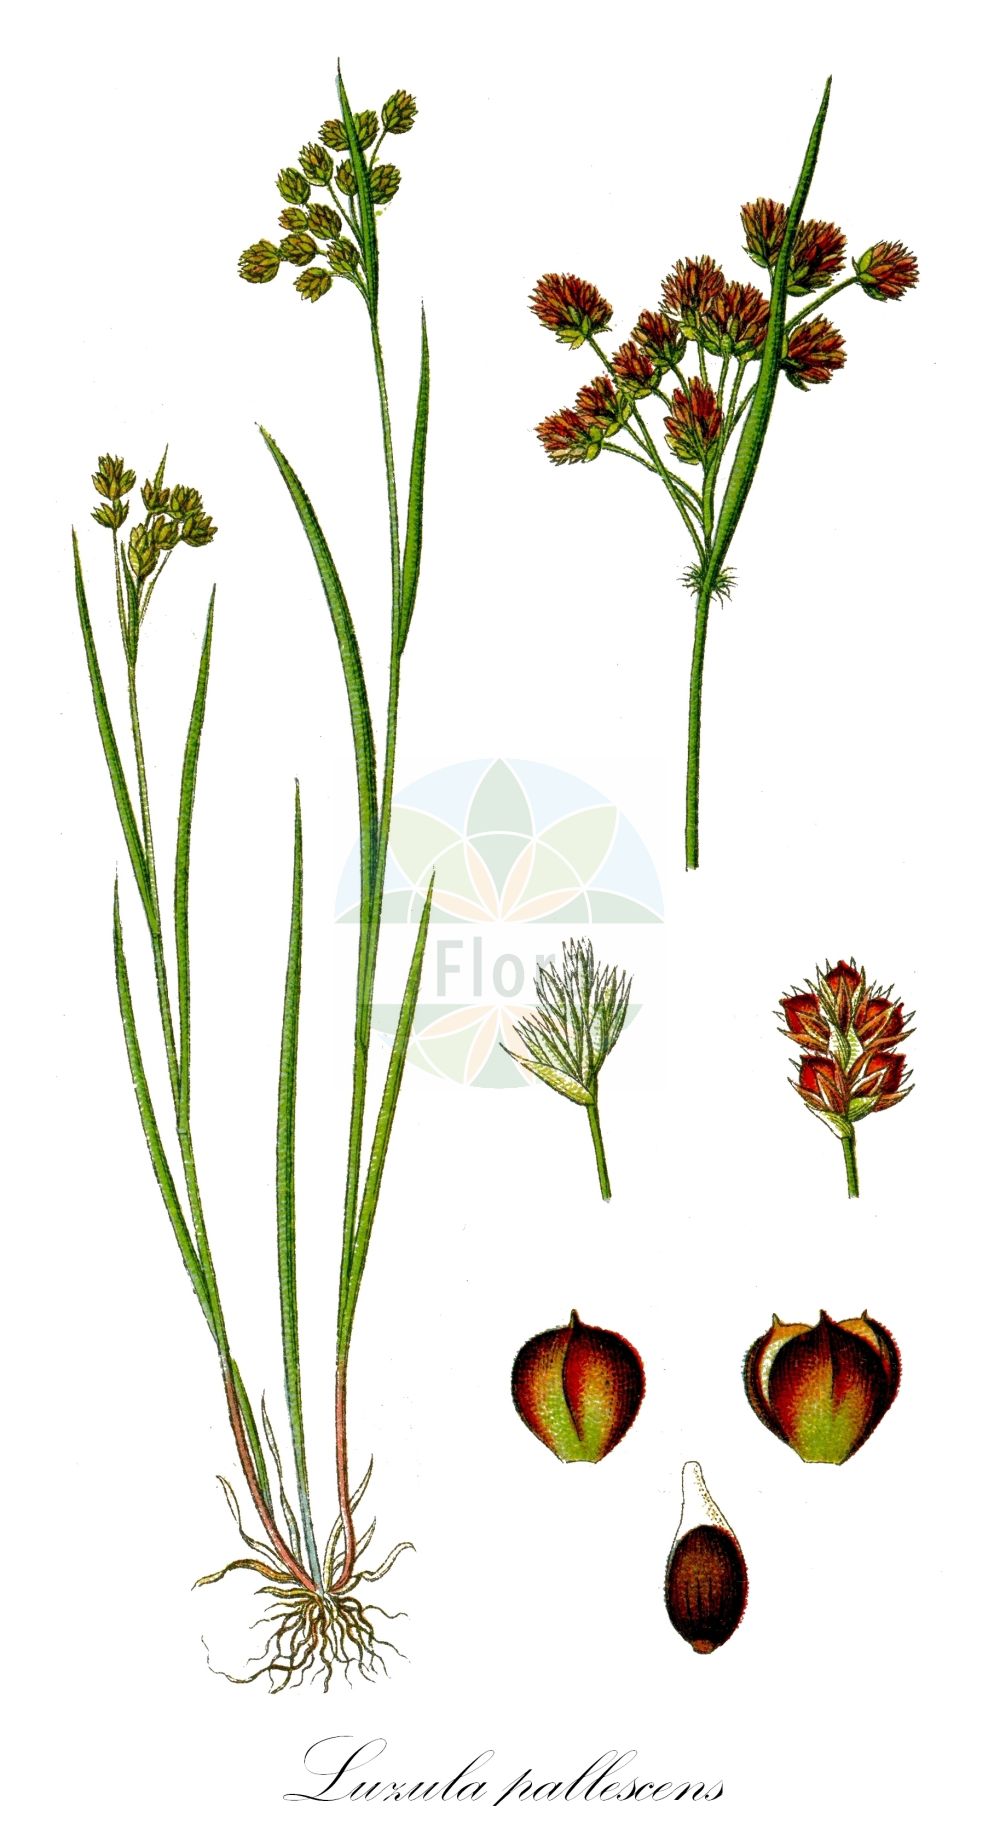 Historische Abbildung von Luzula pallescens (Bleiche Hainsimse - Fen Wood-rush). Das Bild zeigt Blatt, Bluete, Frucht und Same. ---- Historical Drawing of Luzula pallescens (Bleiche Hainsimse - Fen Wood-rush). The image is showing leaf, flower, fruit and seed.(Luzula pallescens,Bleiche Hainsimse,Fen Wood-rush,Juncoides pallescens,Luzula pallescens,Luzula pallidula,Bleiche Hainsimse,Fen Wood-rush,Eurasian Woodrush,Luzula,Hainsimse,Wood-rush,Juncaceae,Binsengewächse,Rush family,Blatt,Bluete,Frucht,Same,leaf,flower,fruit,seed,Sturm (1796f))